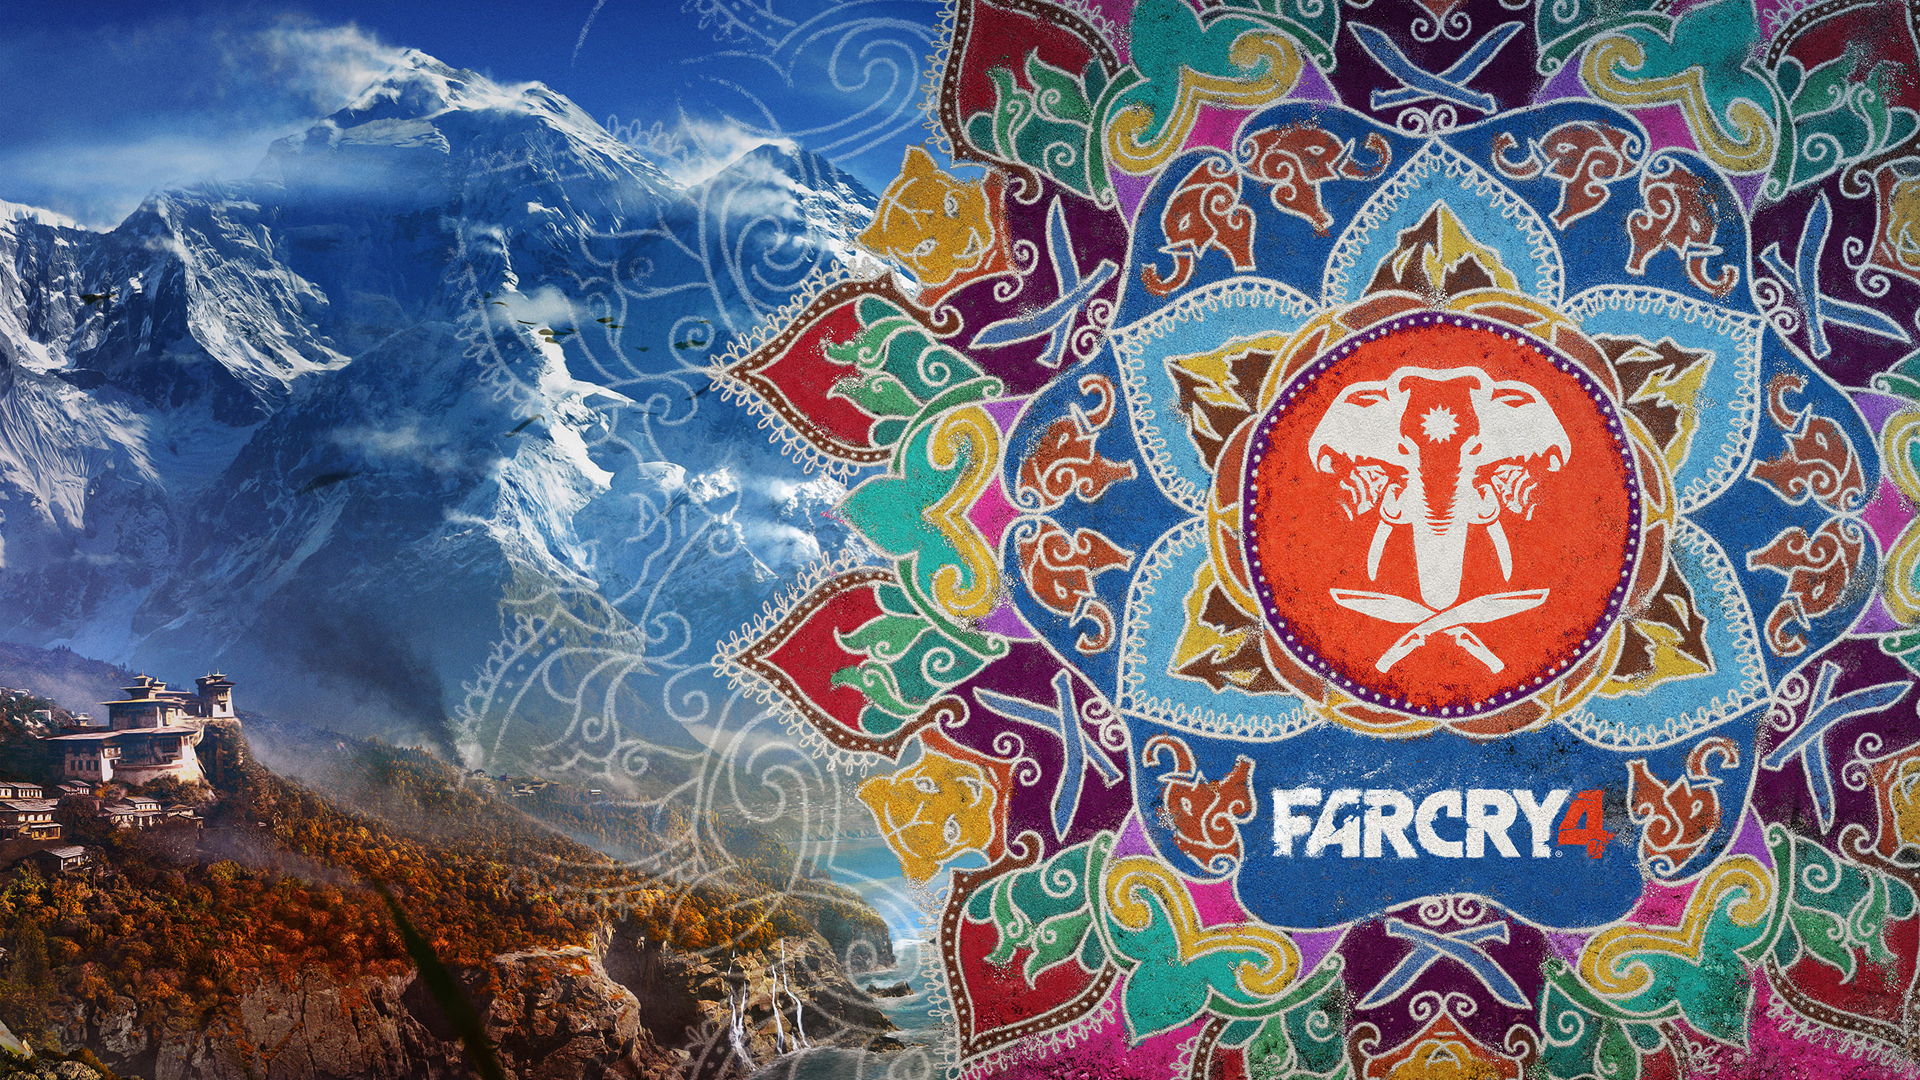 45+] Far Cry 4 Wallpapers - WallpaperSafari